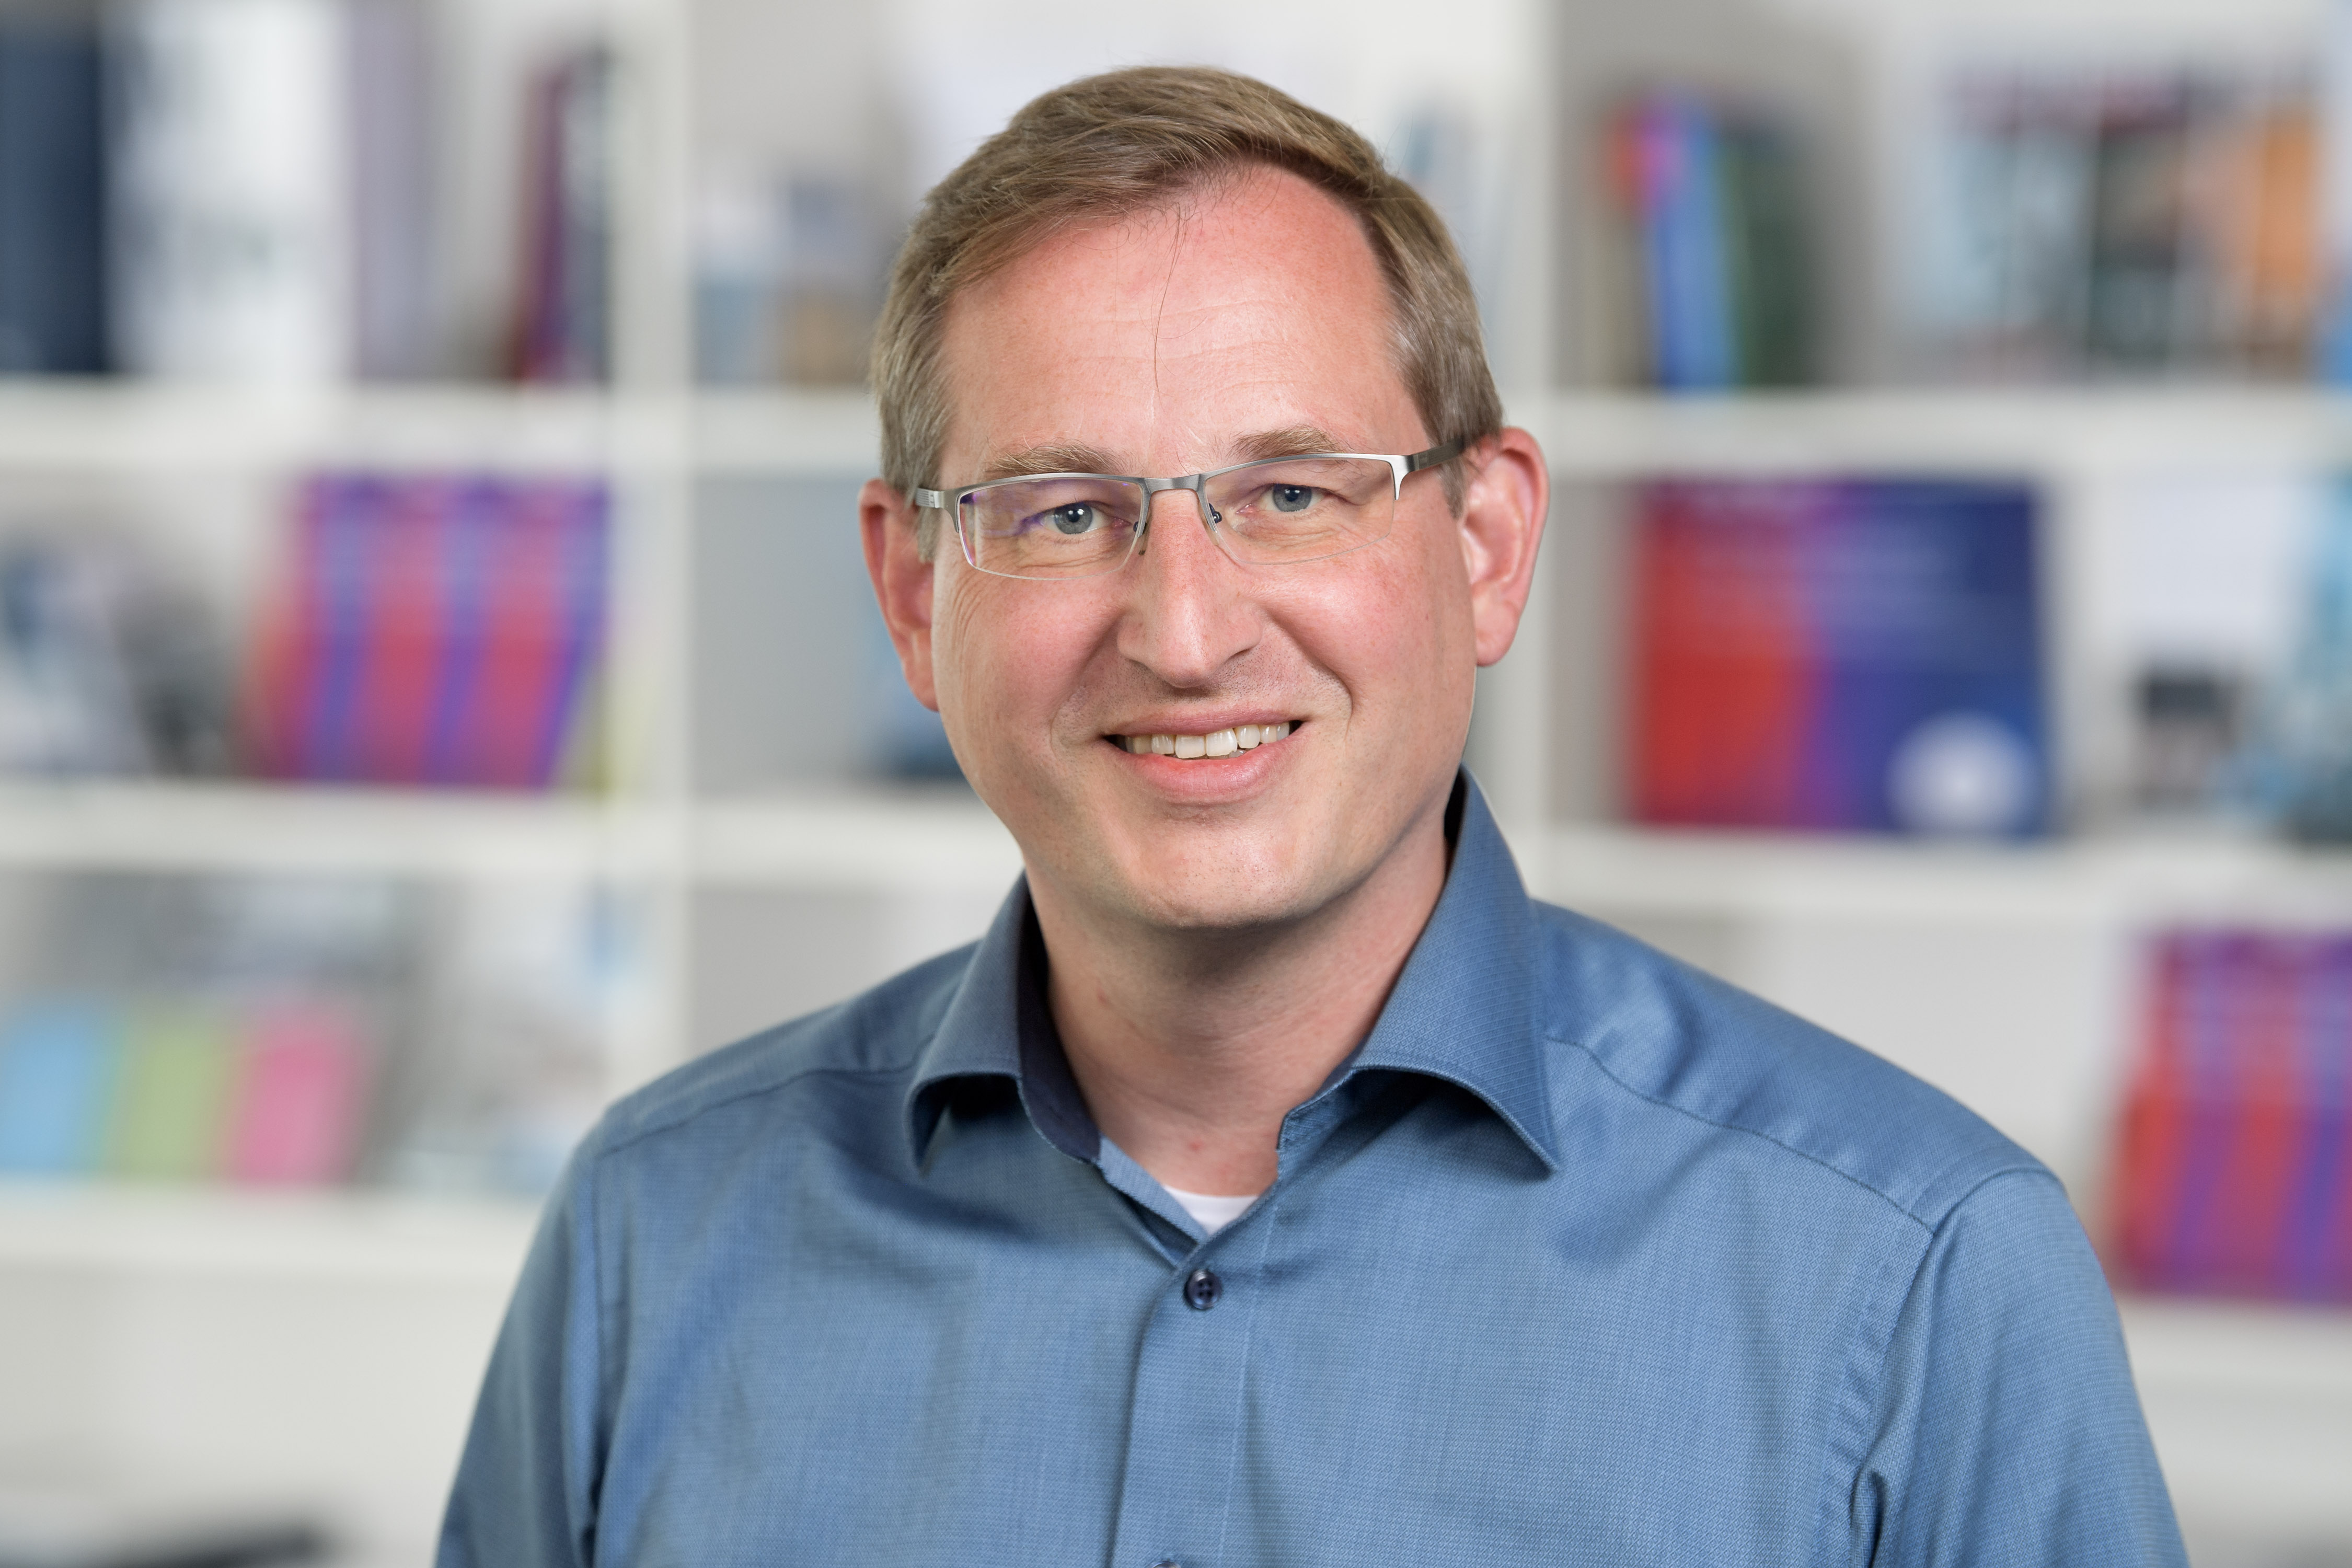 Sven Hamann ist seit dem 01. Juli 2019 Leiter von Bosch Connected Industry.